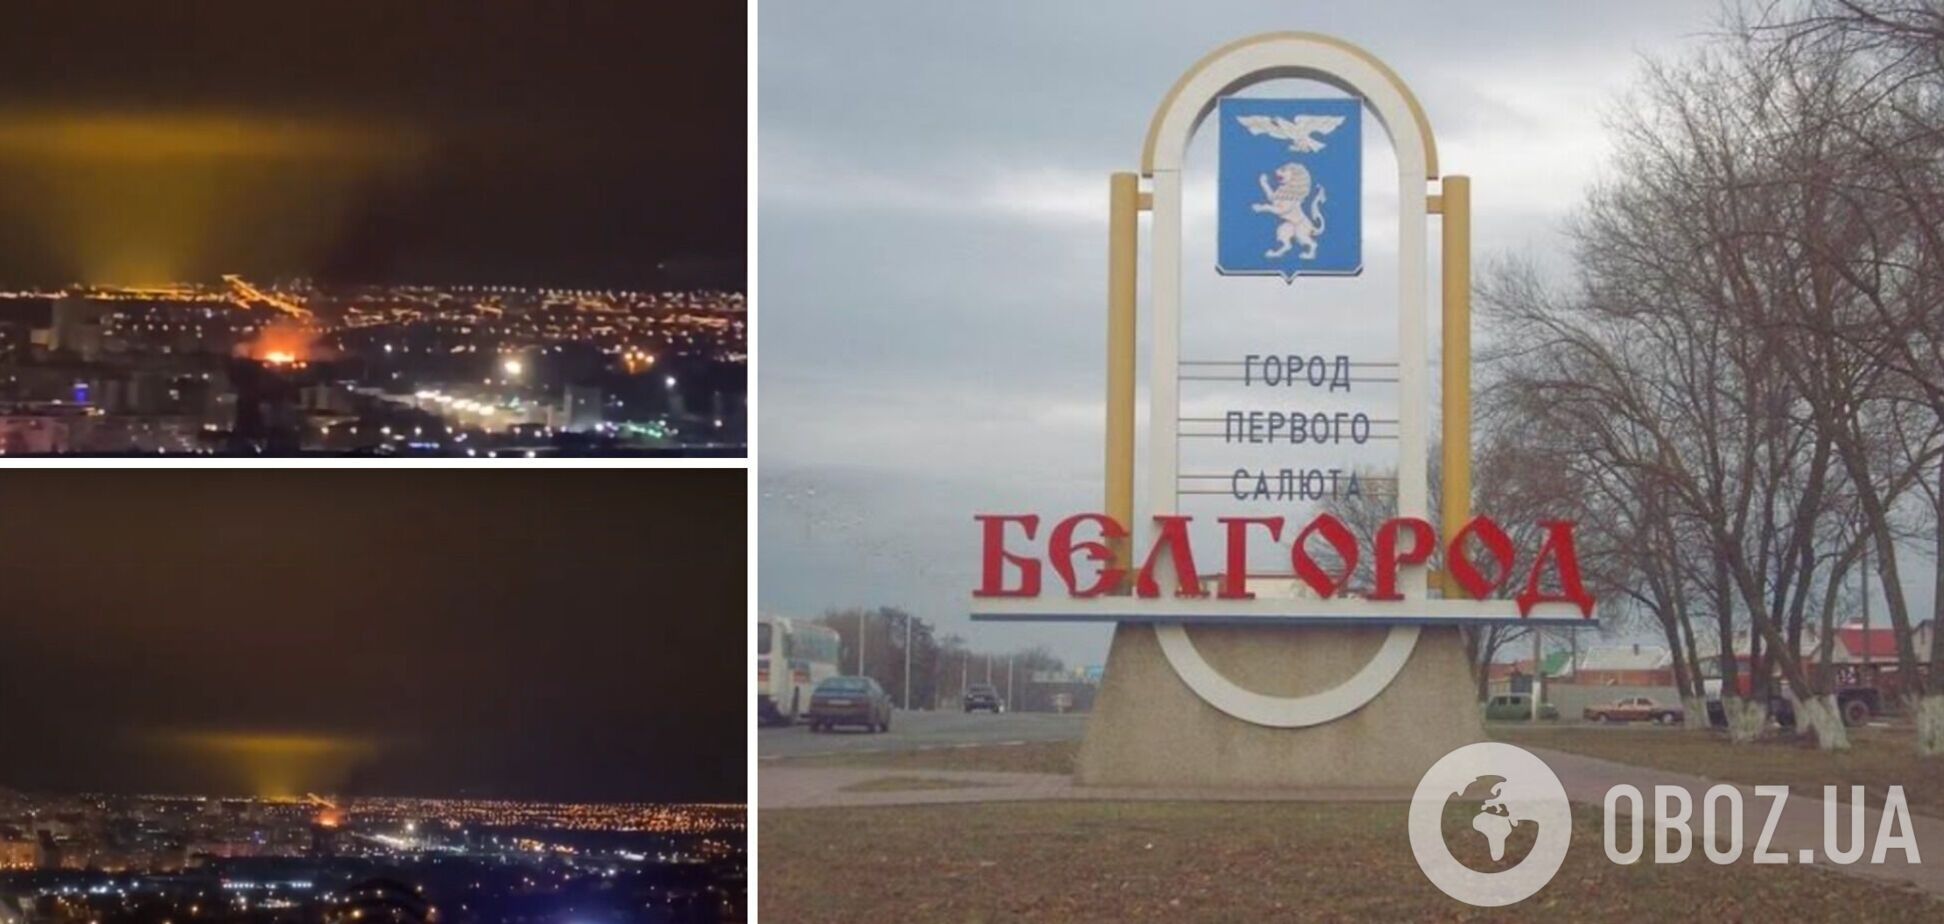 В пригороде российского Белгорода вспыхнул сильный пожар: названы вероятные причины. Видео